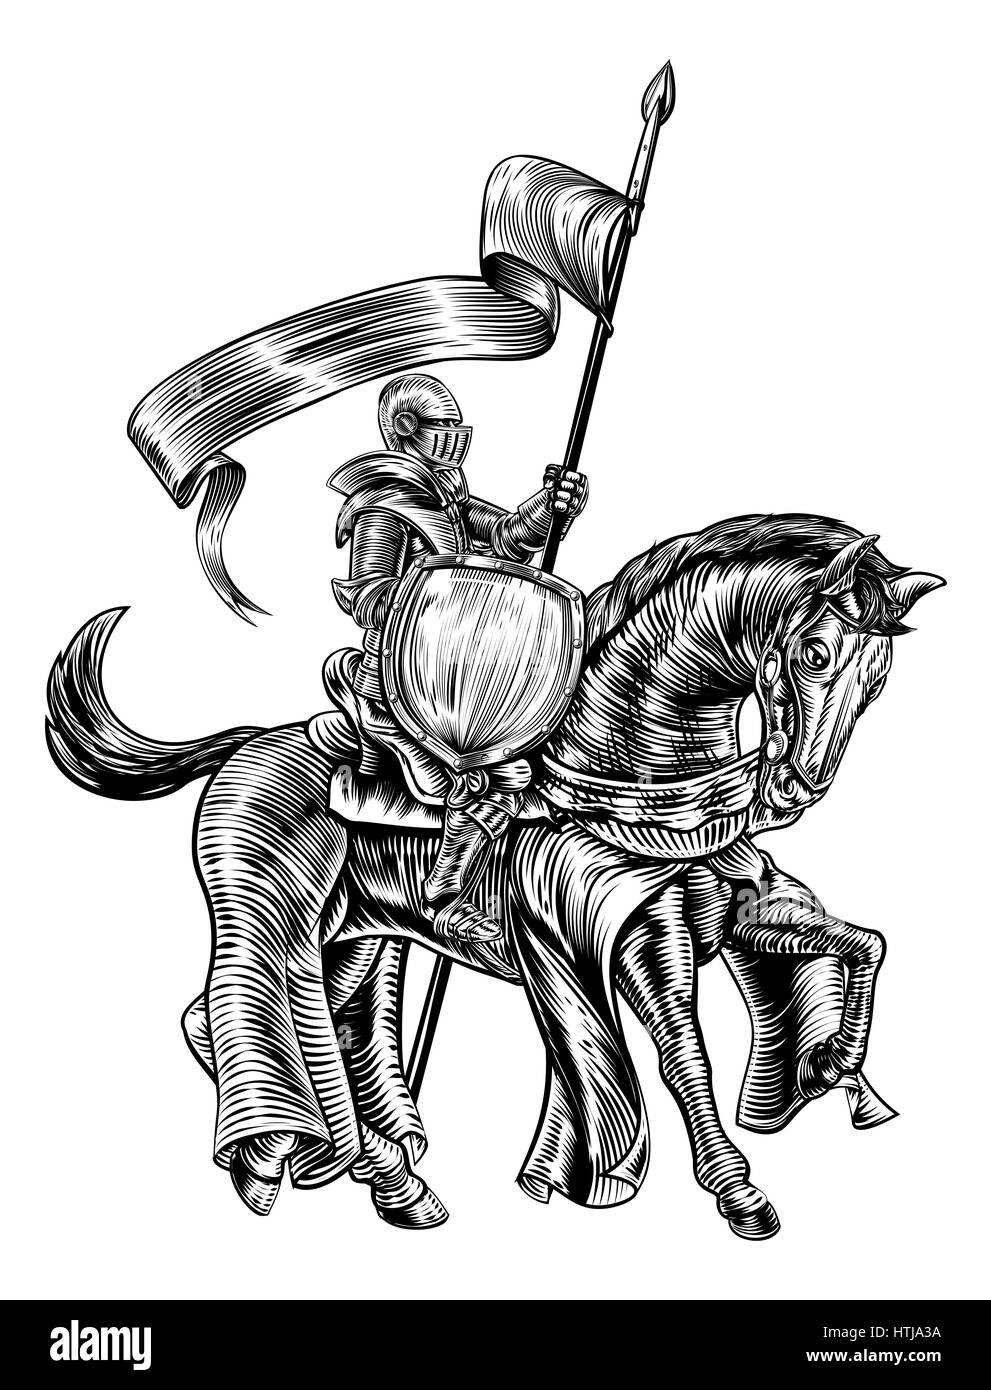 Un chevalier tenant une lance ou une lance avec bannières et le bouclier sur le dos de cheval dans une cité médiévale ou gravés sur bois vintage style gravé Banque D'Images